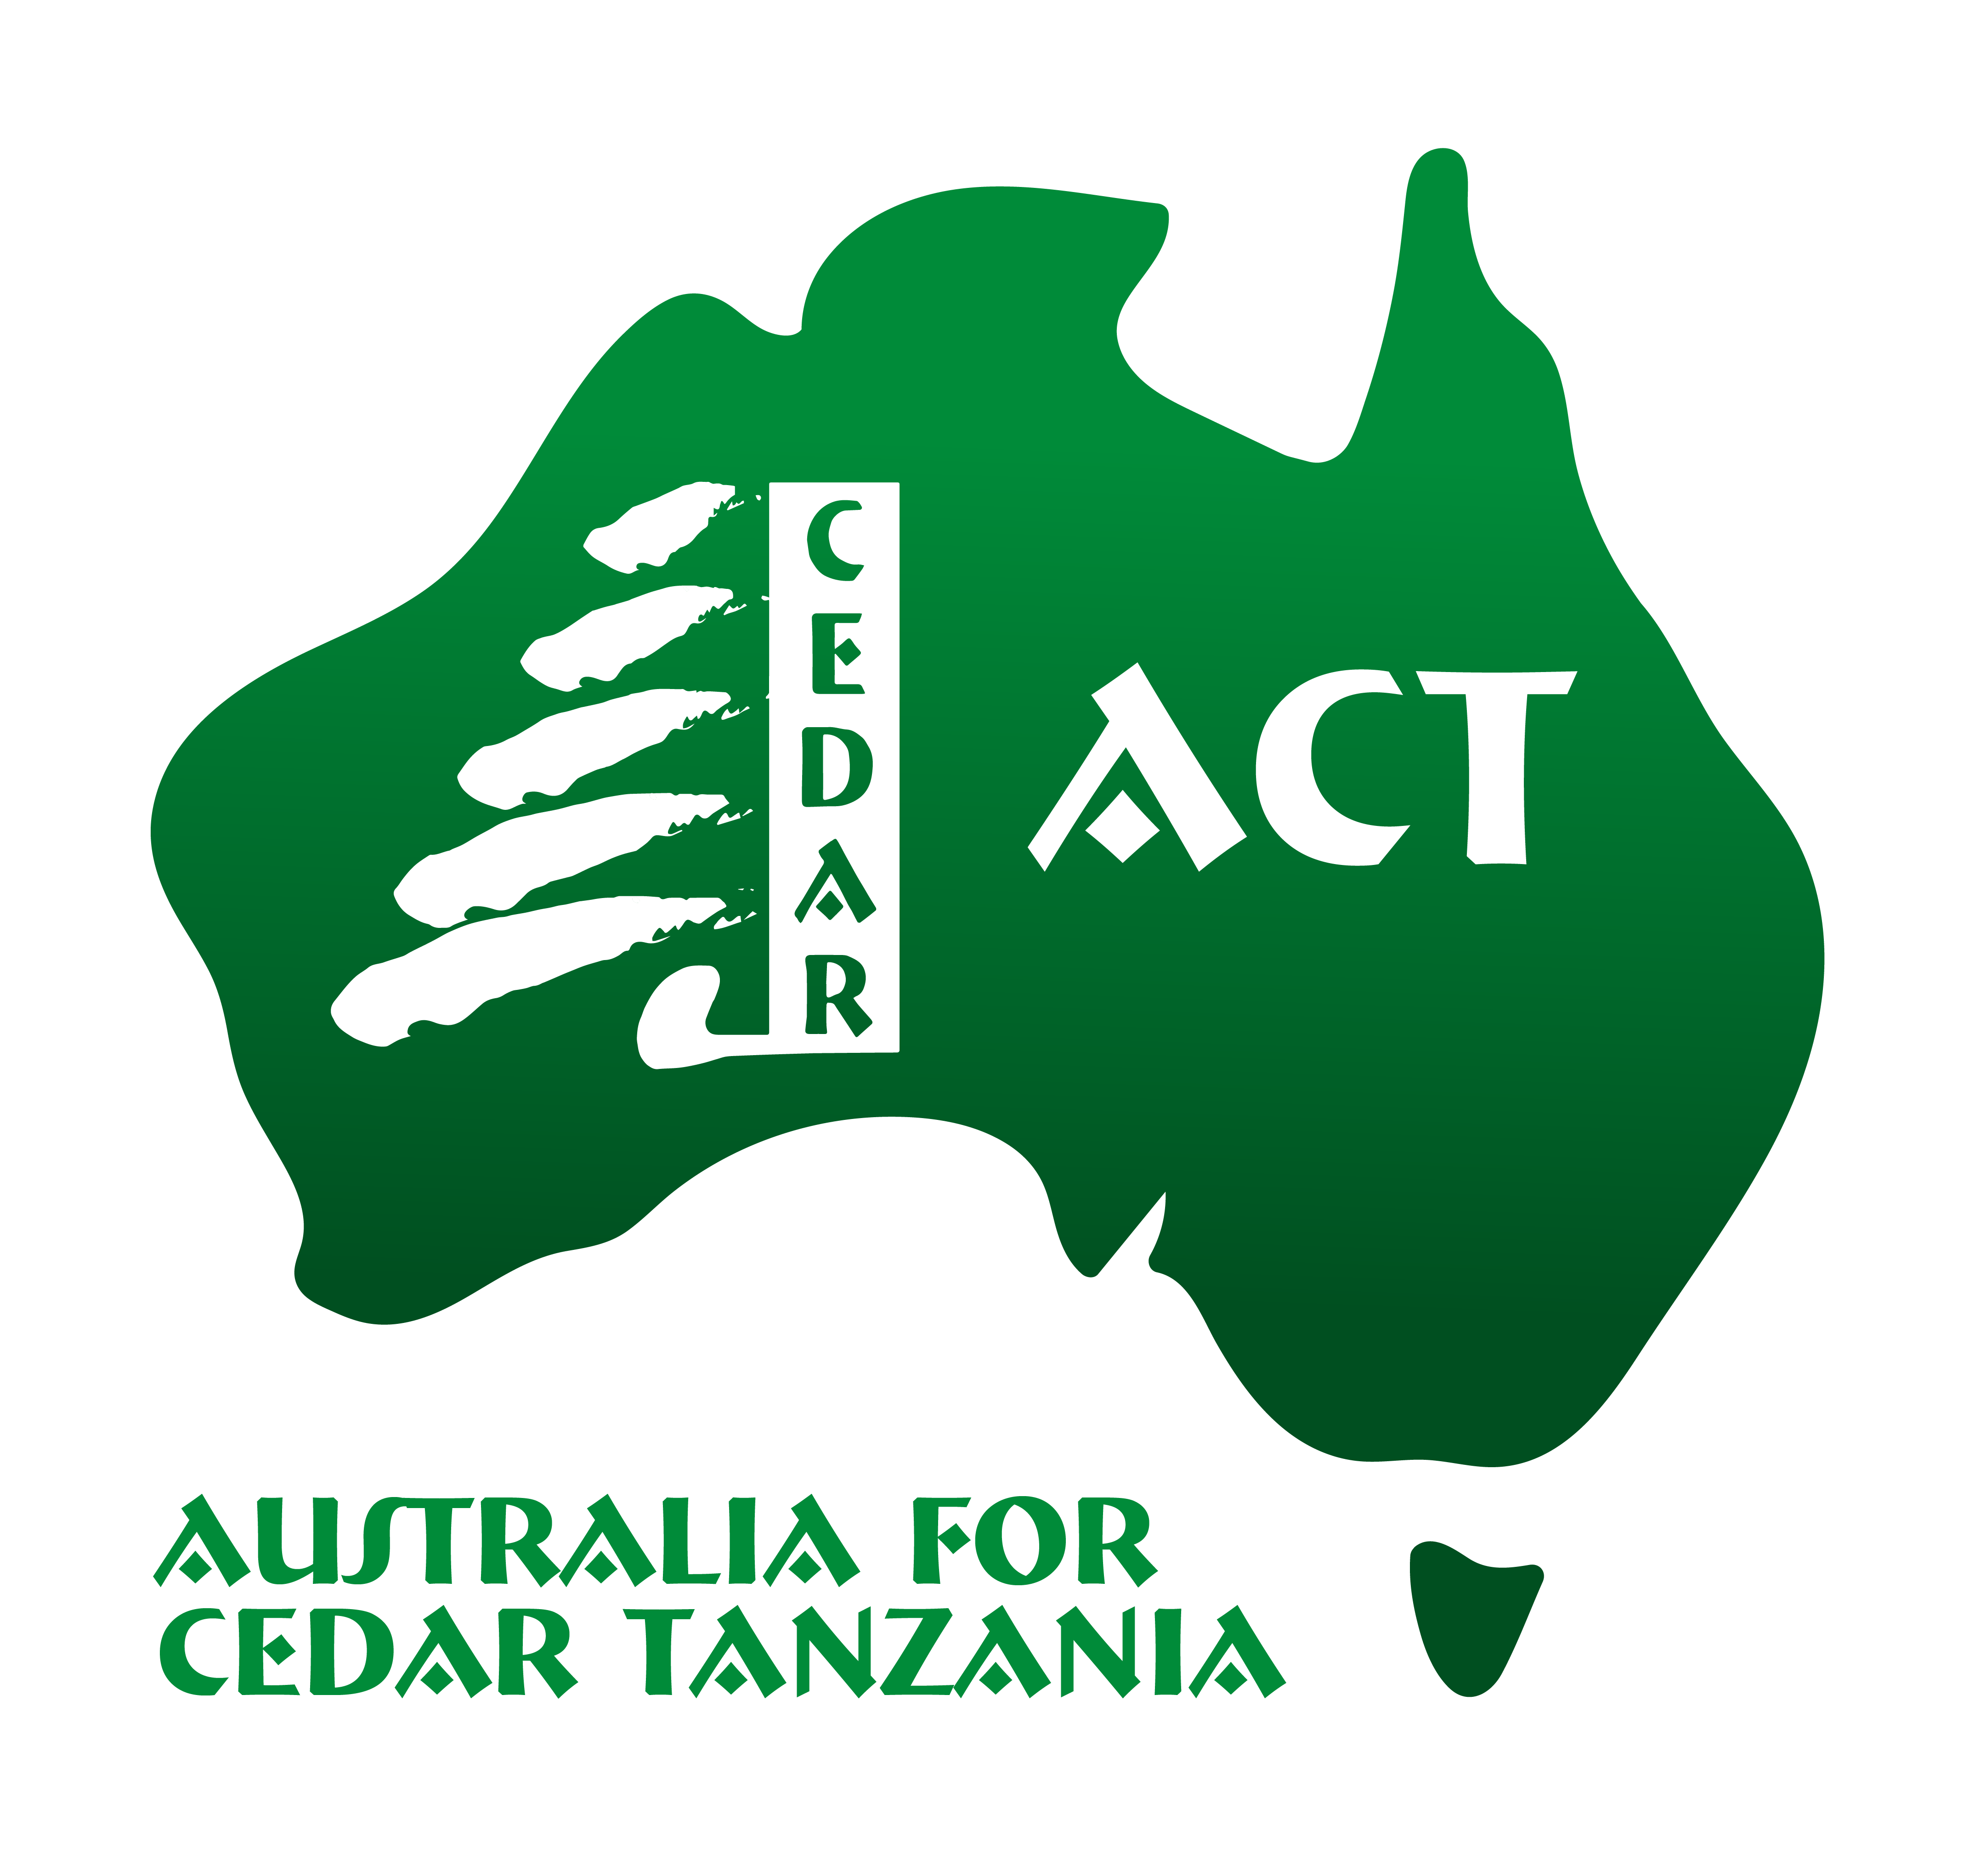 Australia for Cedar Tanzania logo